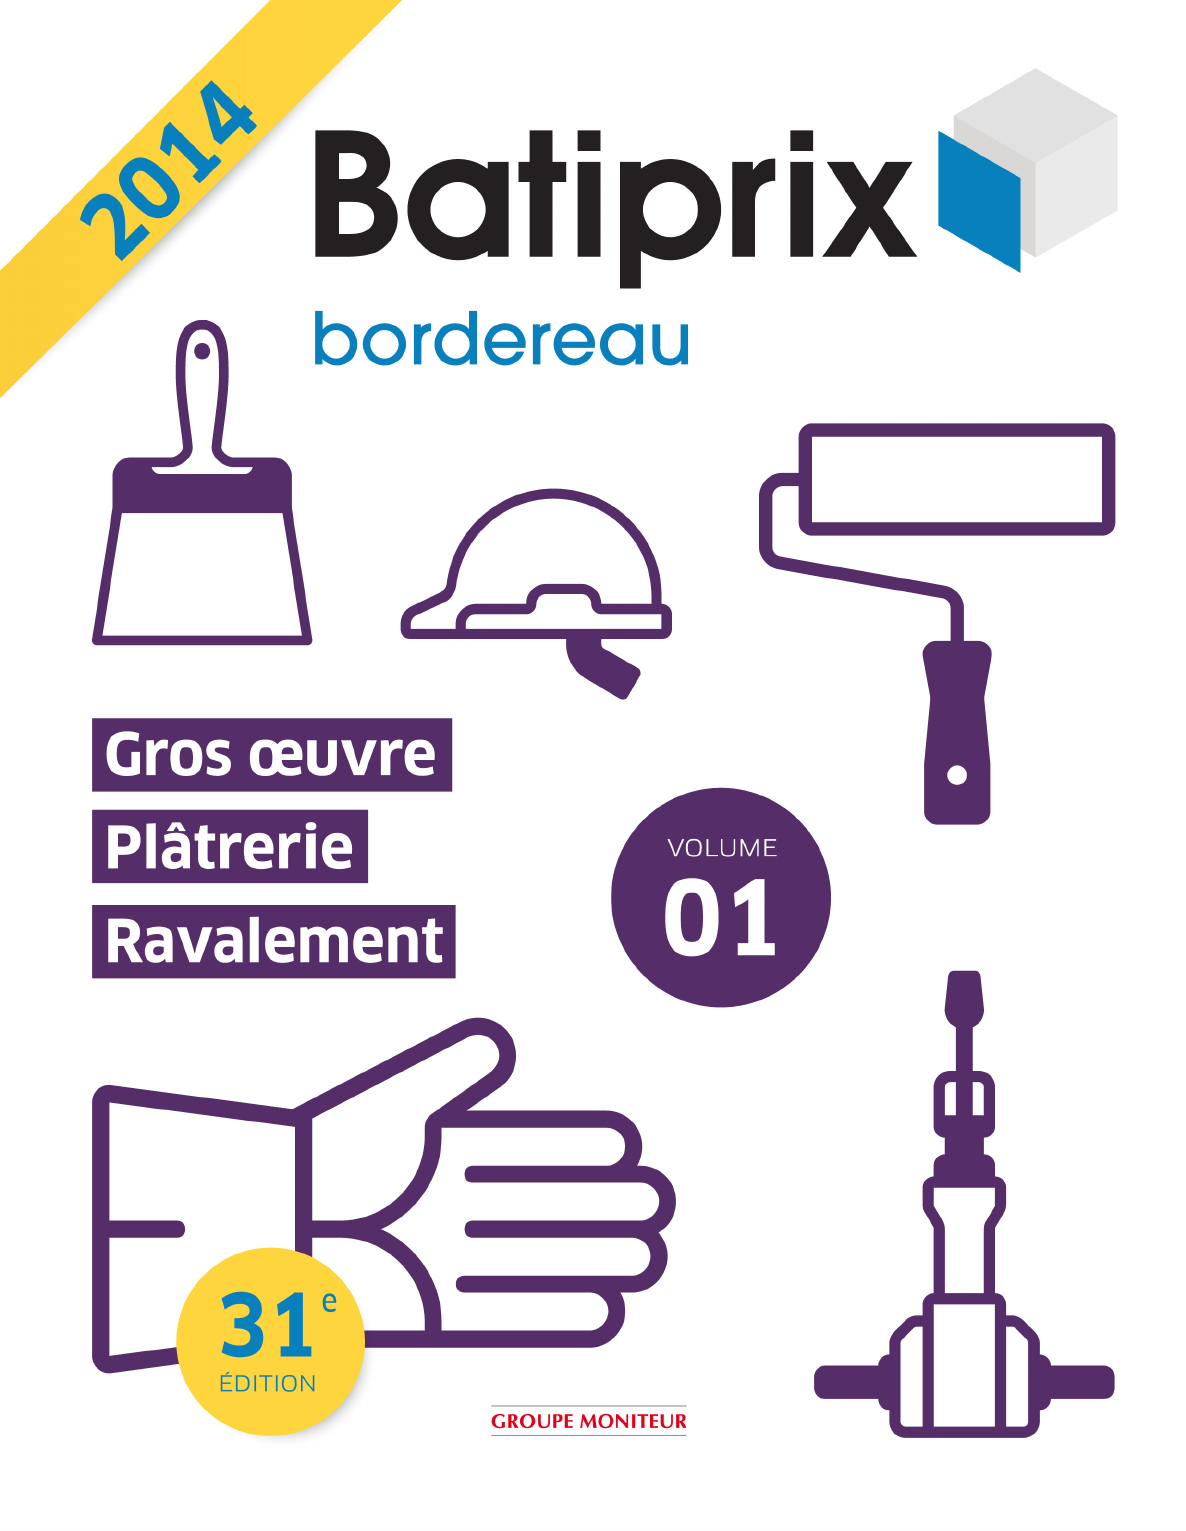 Extrait Batiprix 2014 - [Pdf Document] serapportantà Couvertines Alu 10/10E Pour Acrotres De Toit Terrasse